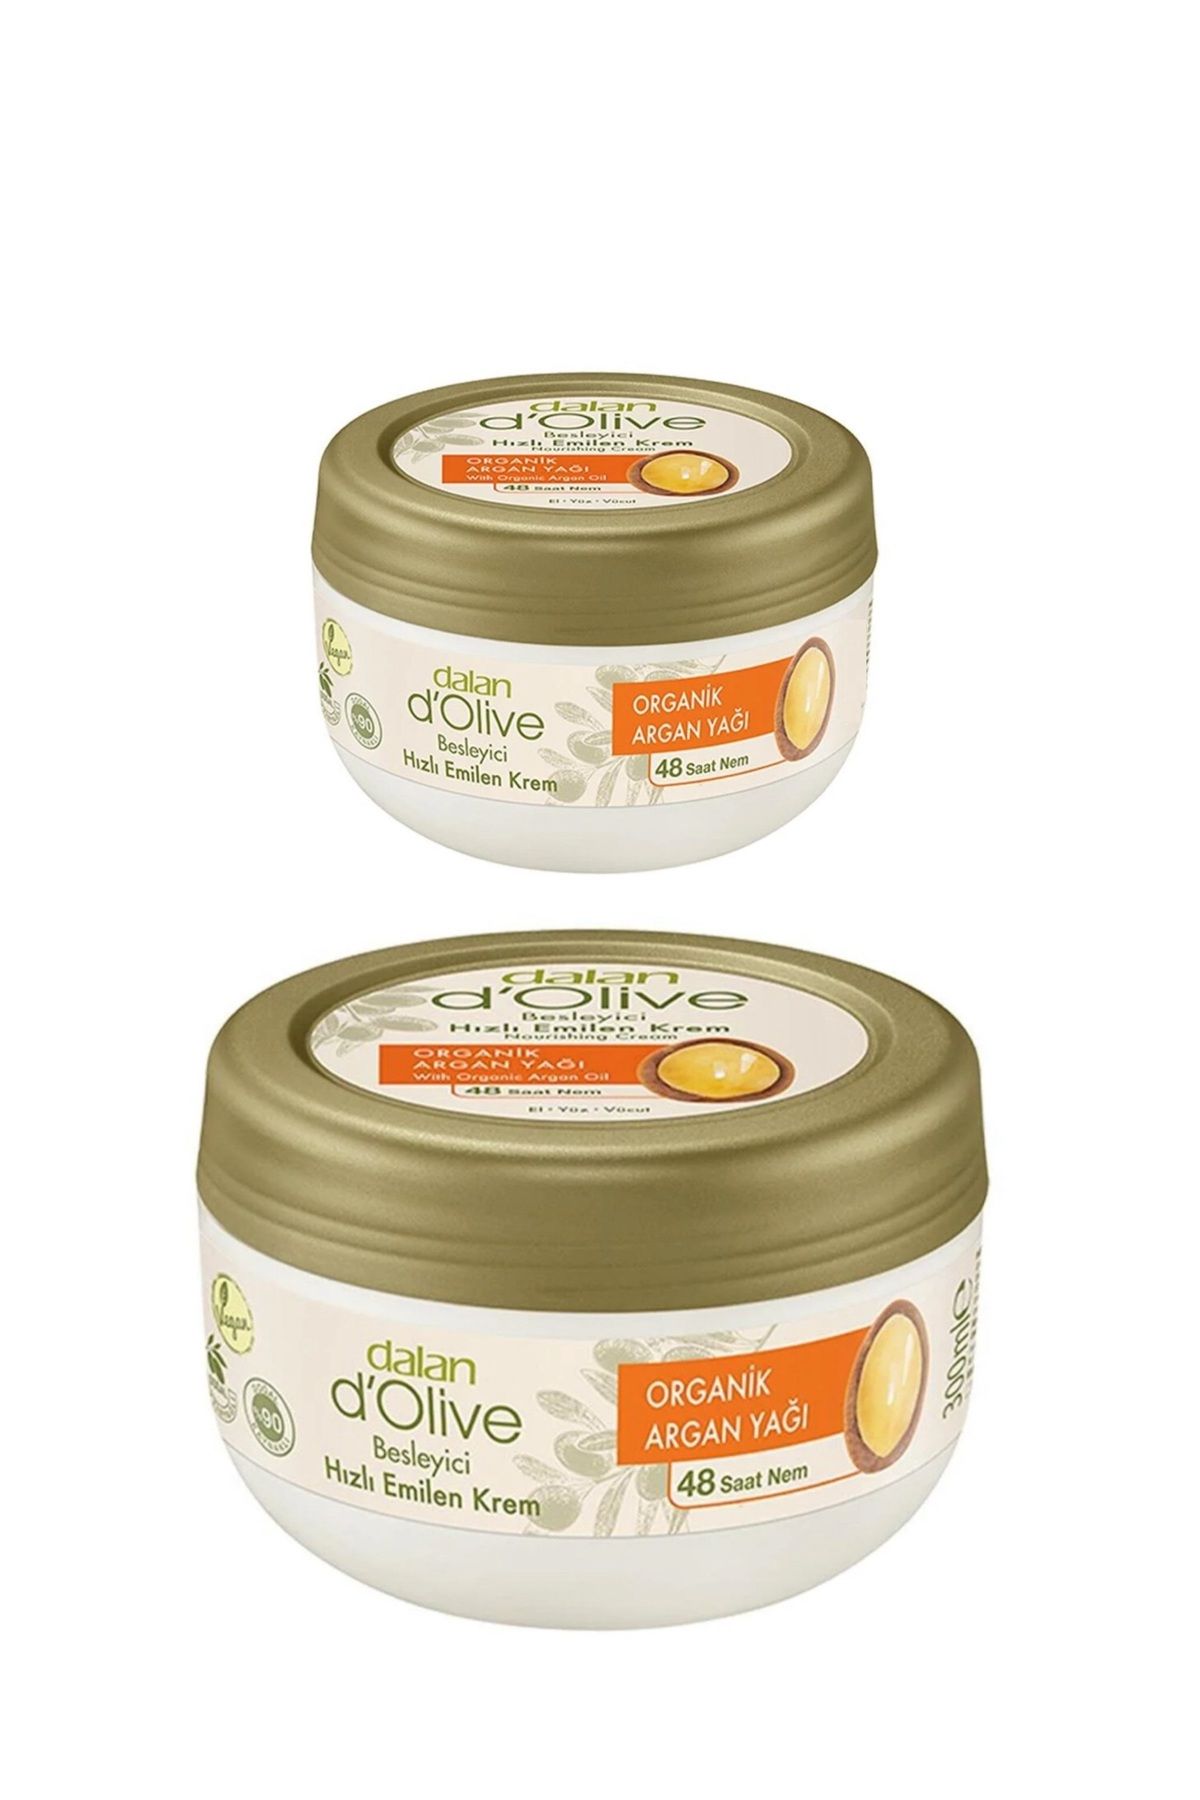 Dalan D'olive Organik Argan Yağı Besleyici Hızlı Emilen Krem 300 ml + 150 ml